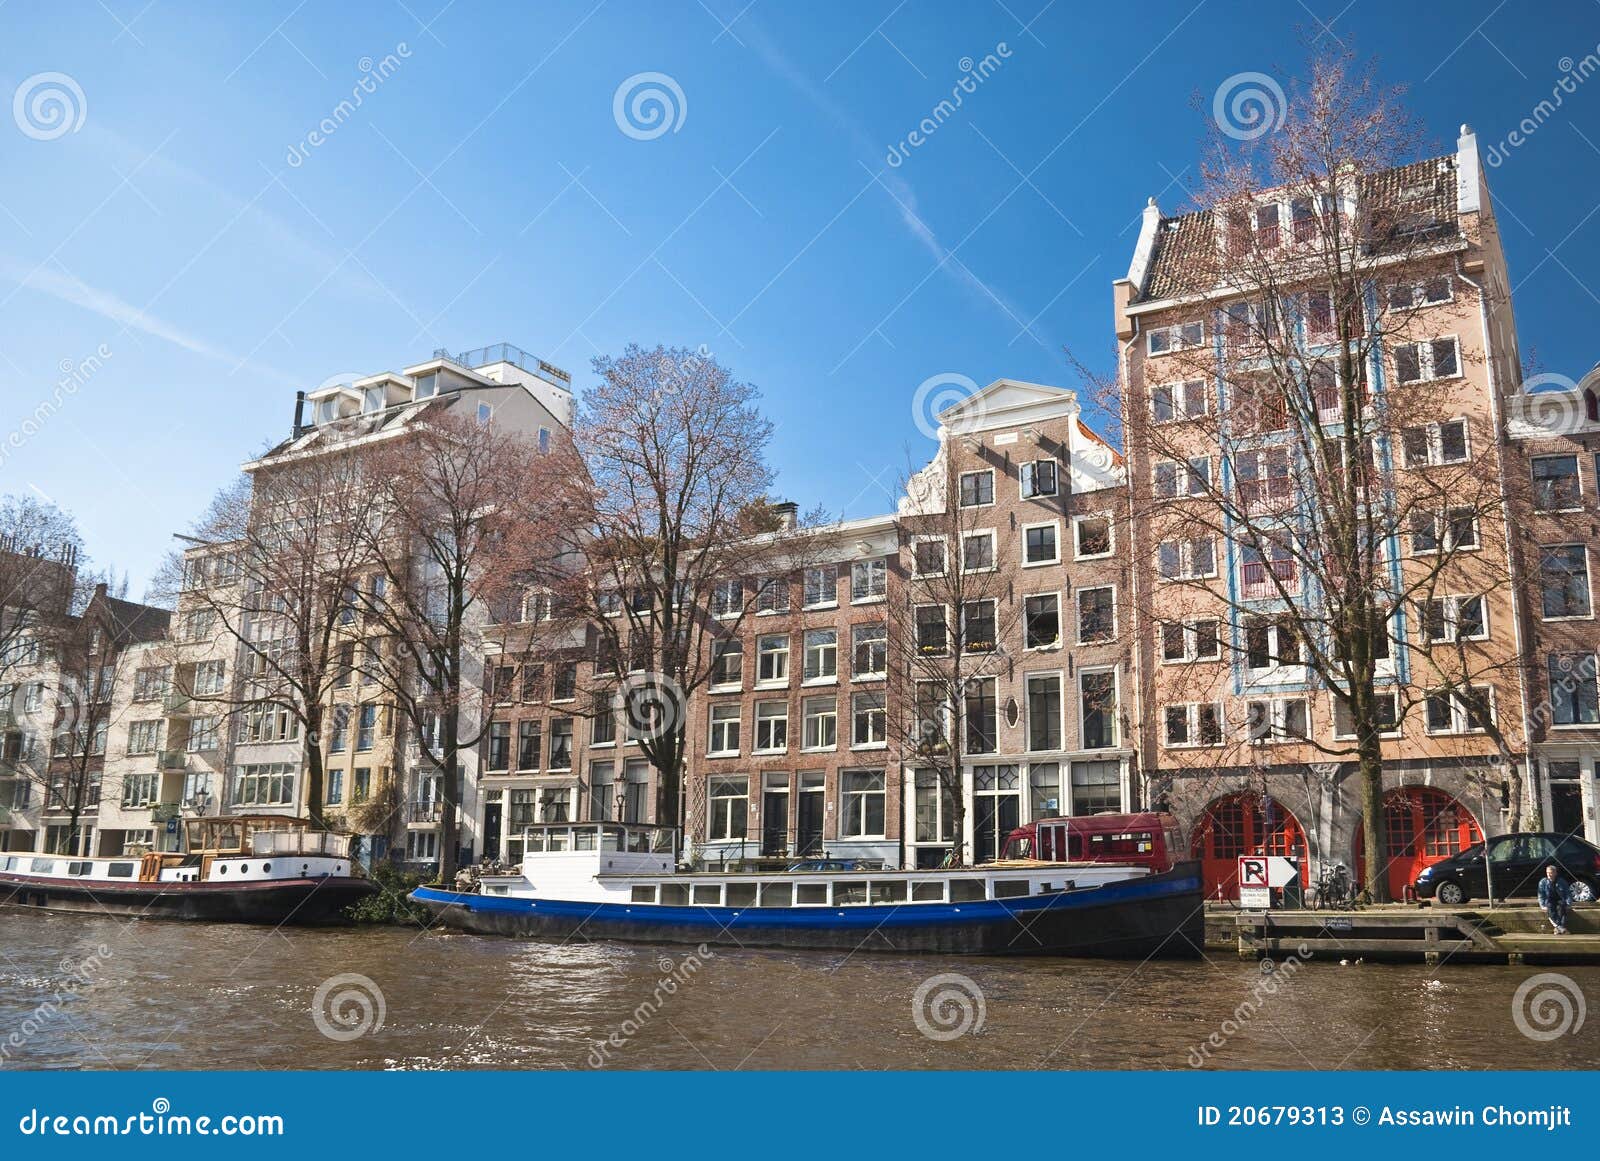 Amsterdam-Atmosphäre von der Bootsansicht. Boote und Häuser sind von Amsterdam das eindeutige